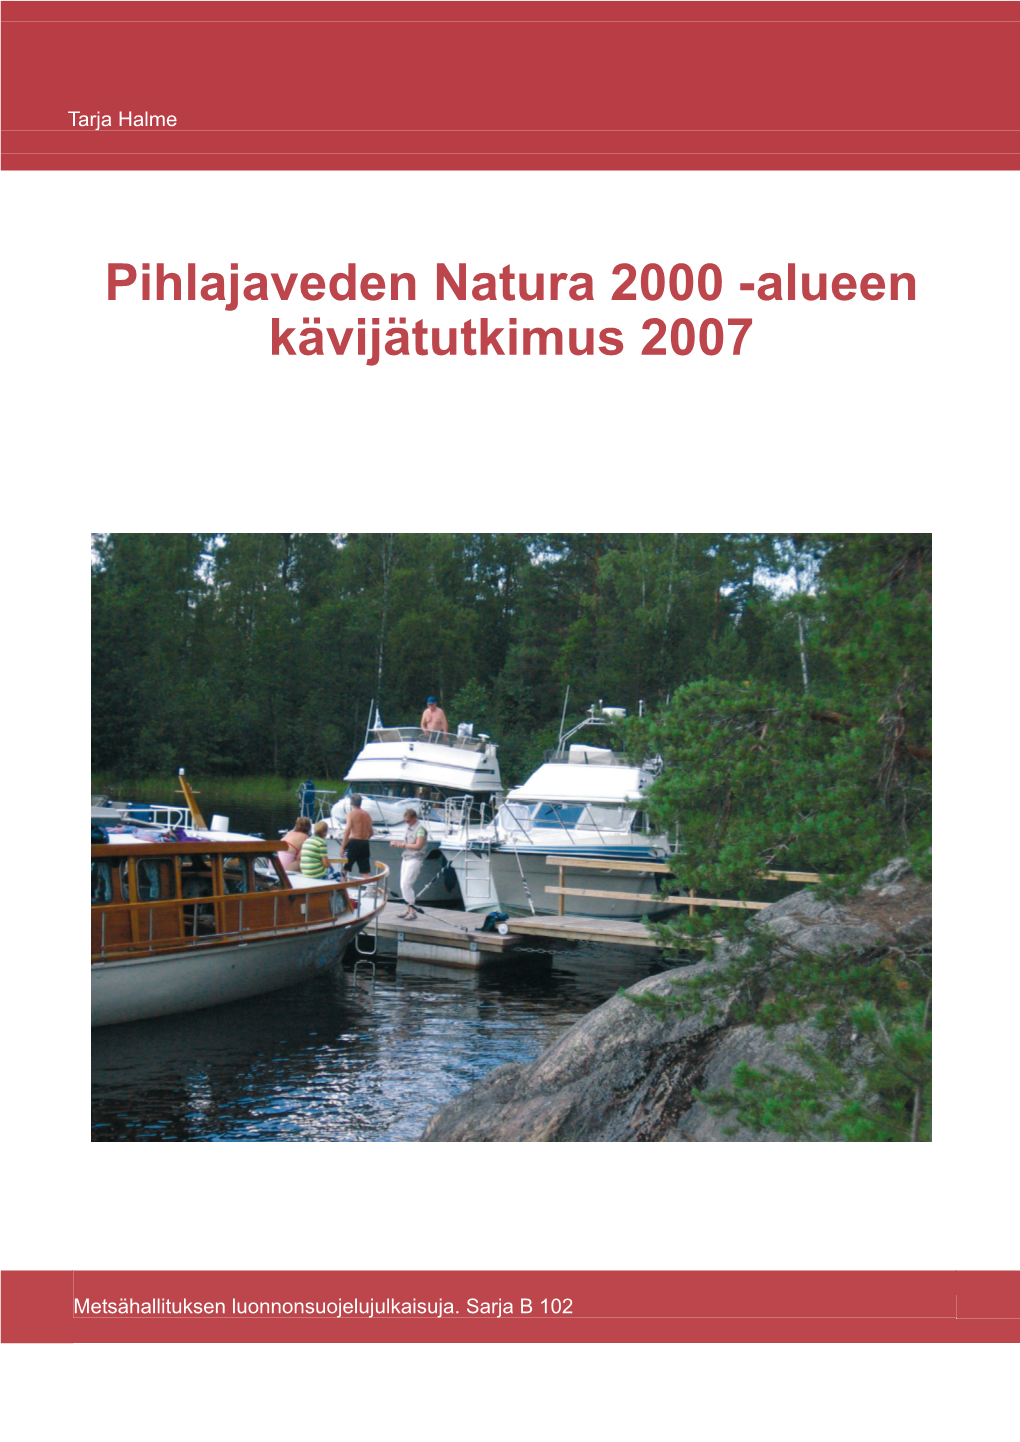 Pihlajaveden Natura 2000 -Alueen Kävijätutkimus 2007